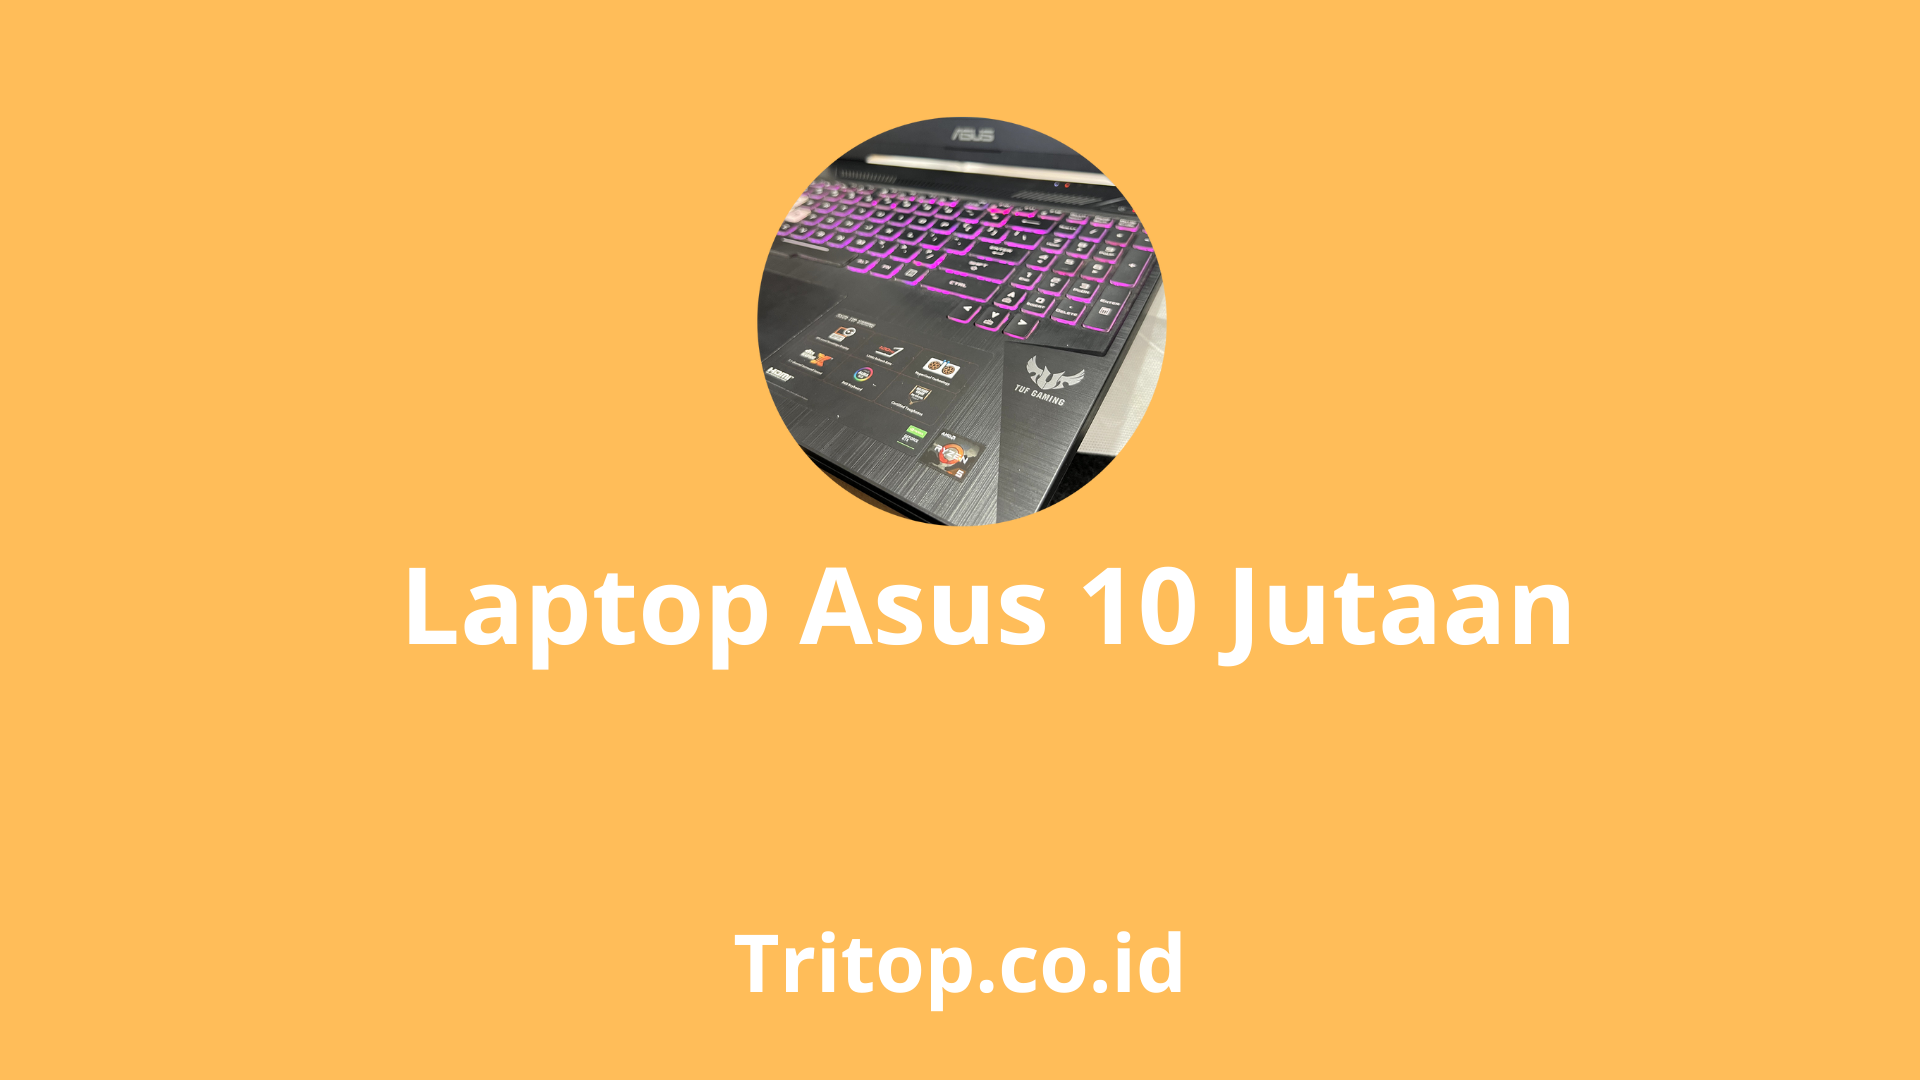 Laptop asus 10 jutaan terbaik tritop.co.id